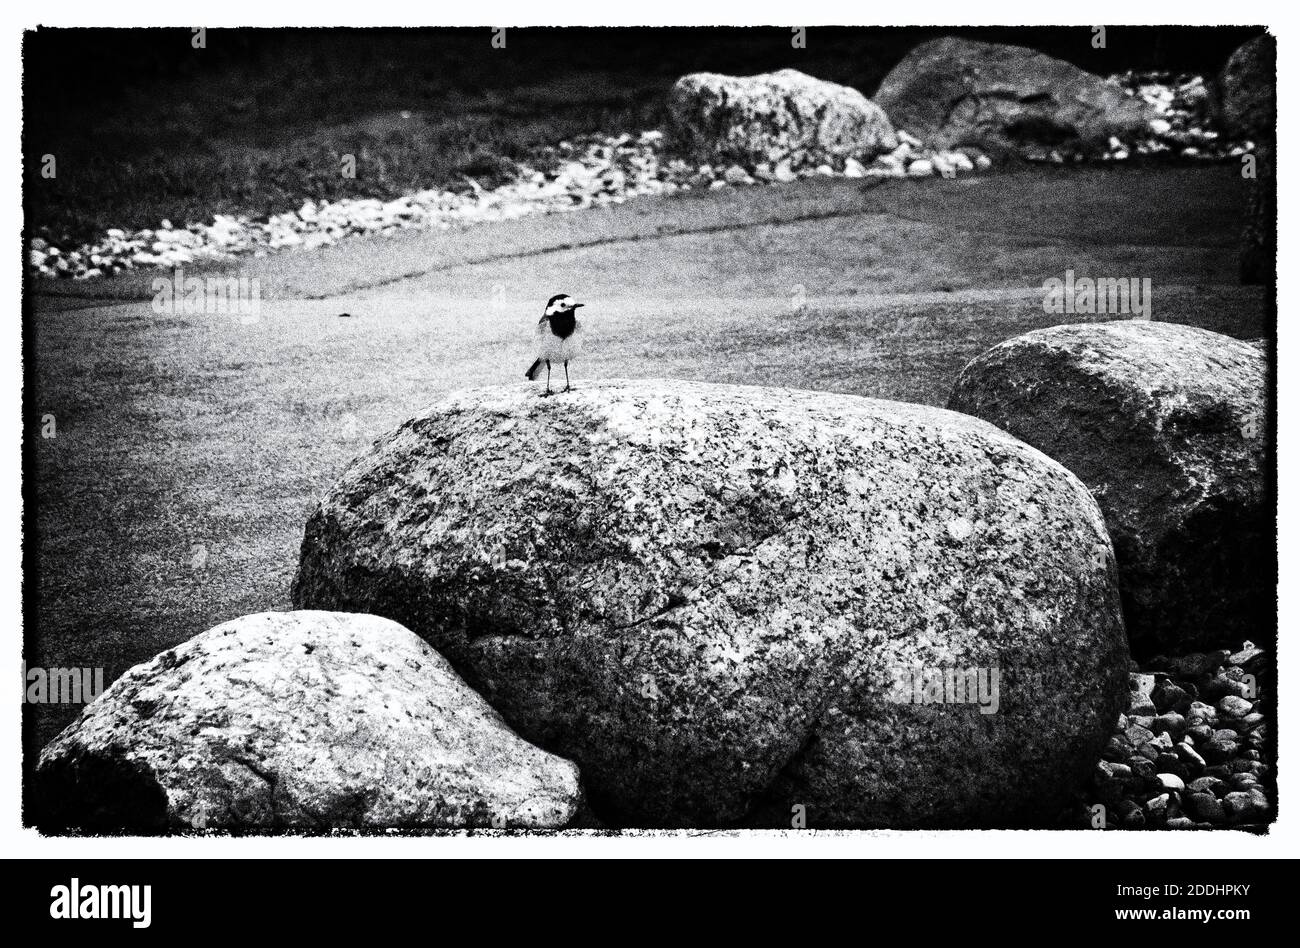 Fotografia in bianco e nero, un po' dura nella sua forma, con un piccolo uccello a contrasto su un masso gigante. Foto Stock